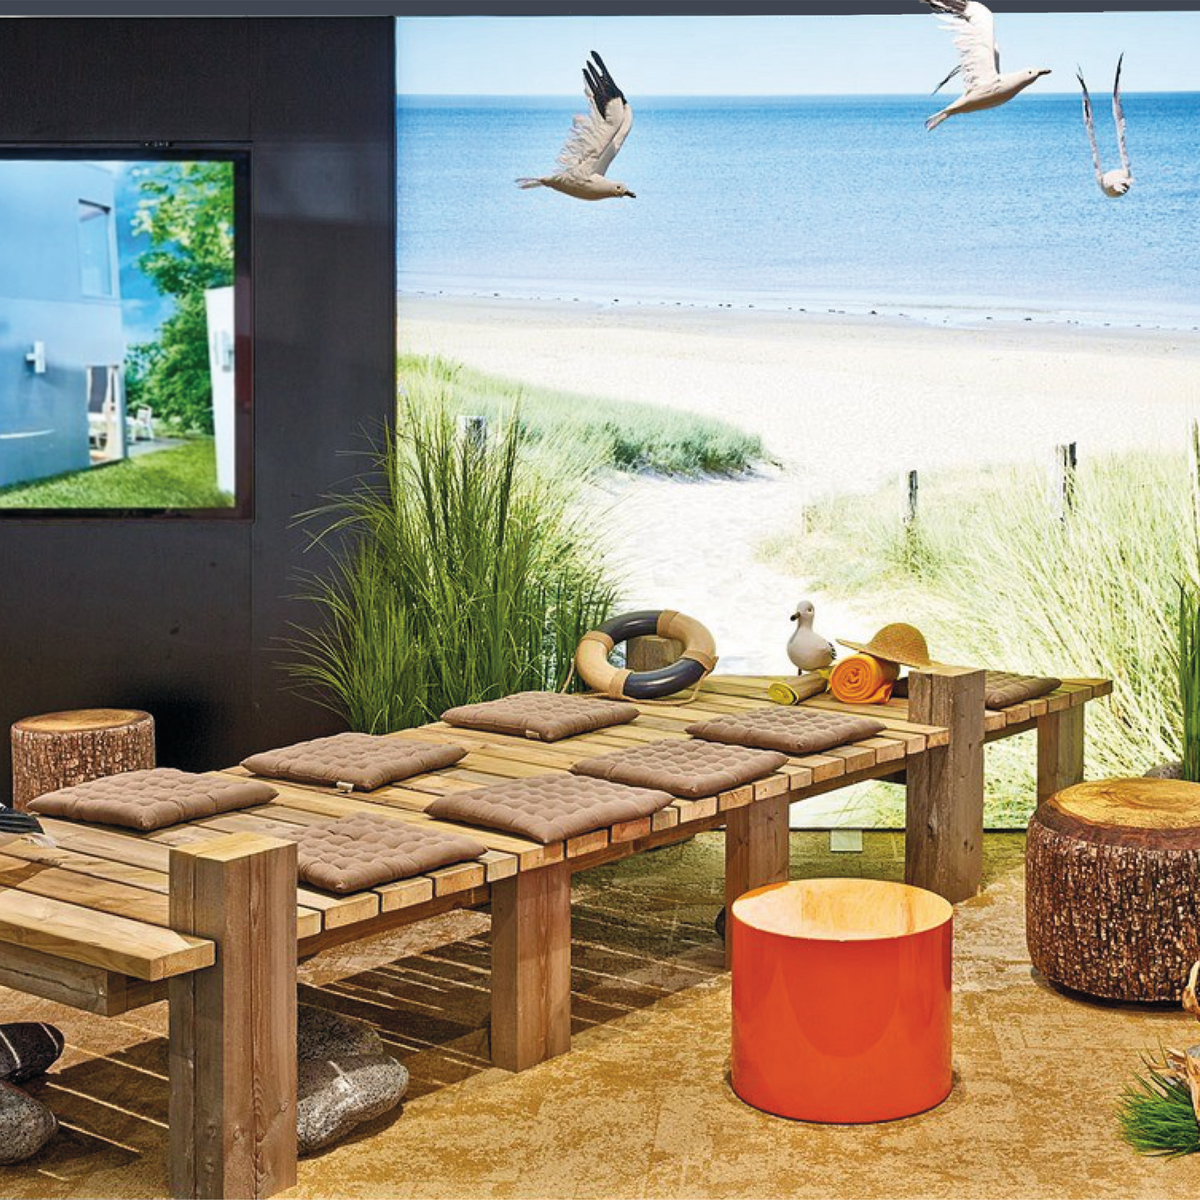 Ein Holzsteg mit Sitzpolstern im Vordergrund, im Hintergrund erstreckt sich der Strand als beleuchtetes Foto